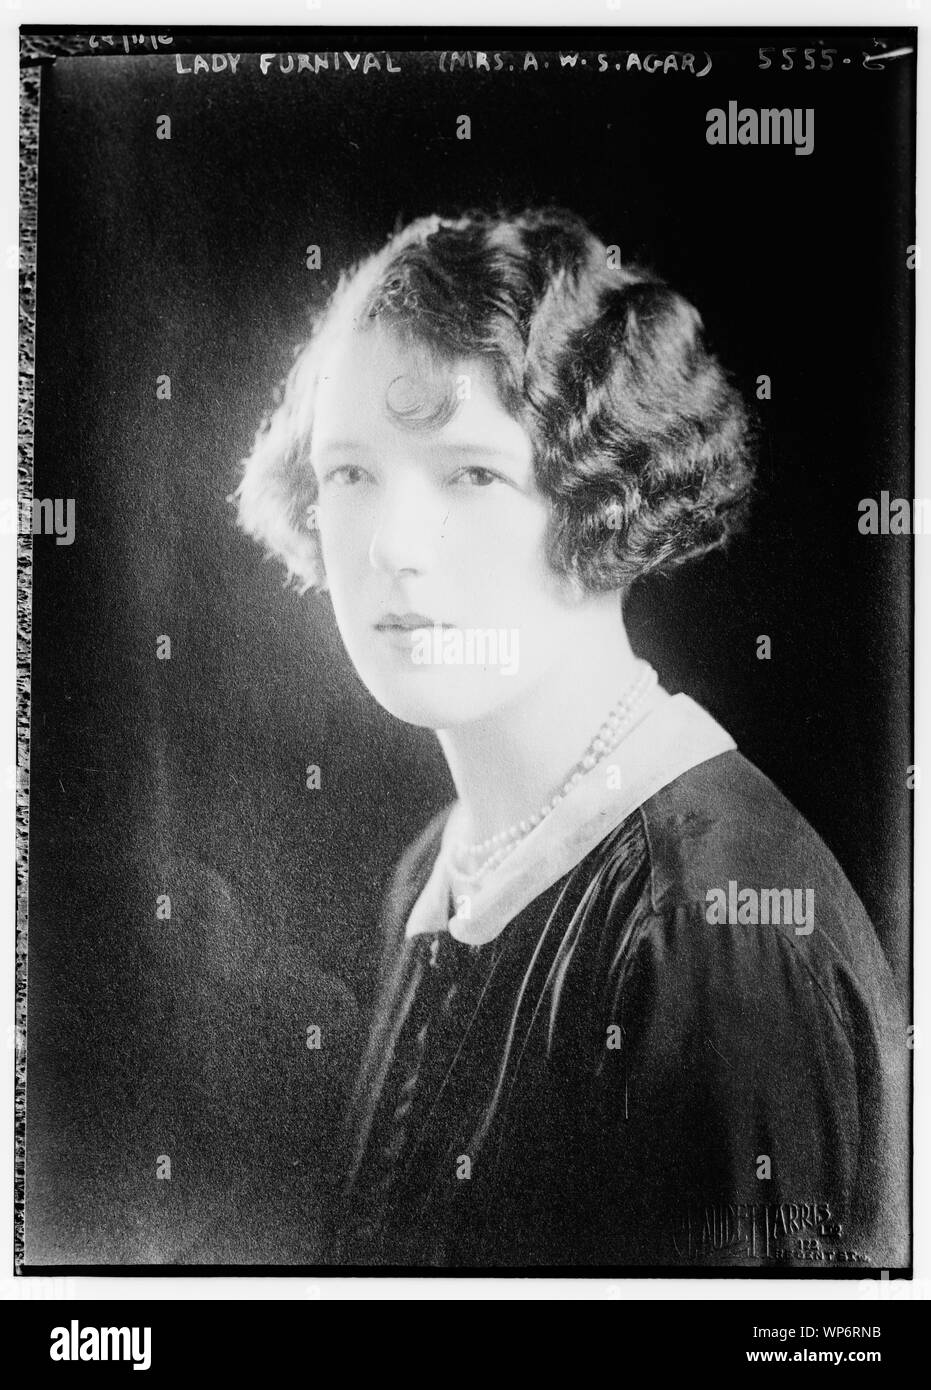 Lady Furnival (Mrs. A.W.S. Agar Stock Photo - Alamy